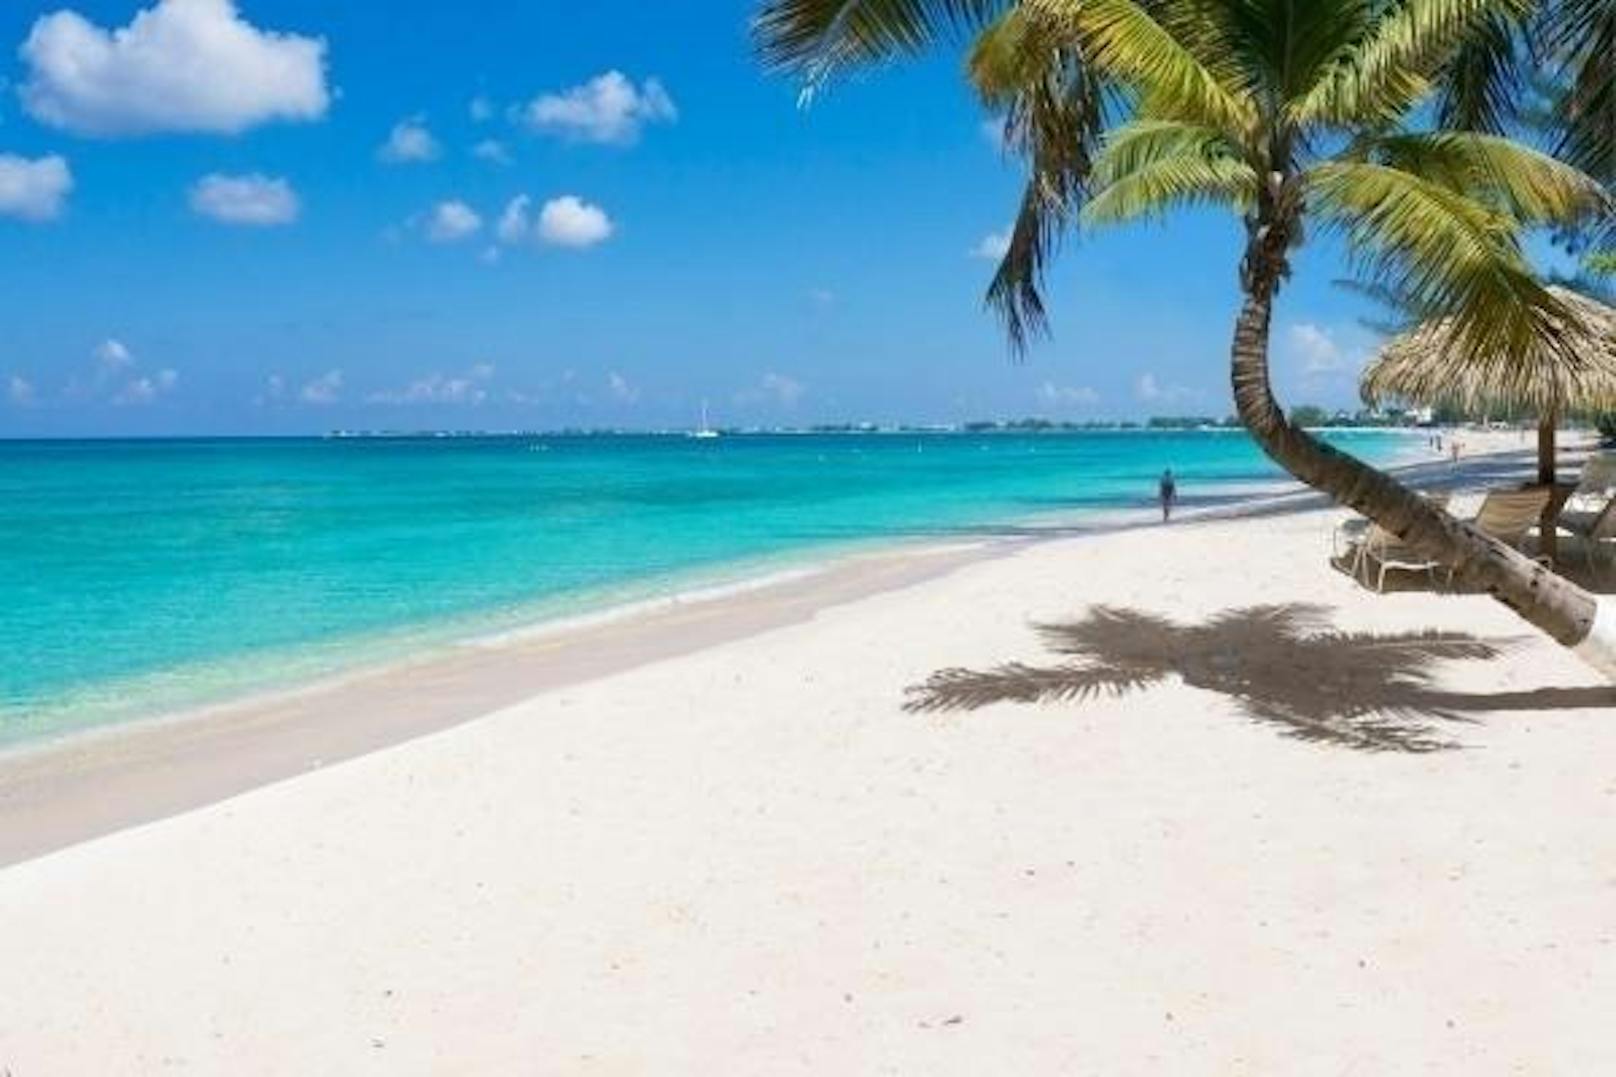 <b>Platz fünf: Seven Mile Beach, Grand Cayman, Cayman-Inseln:</b> "Einer der schönsten Strände der Karibik. Kilometerweiter feiner Sandstrand mit türkisem Wasser. Am Strand gibt es Bars mit teilweise kostenlosem Wasser", heißt es in einer Tripadvisor-Bewertung.